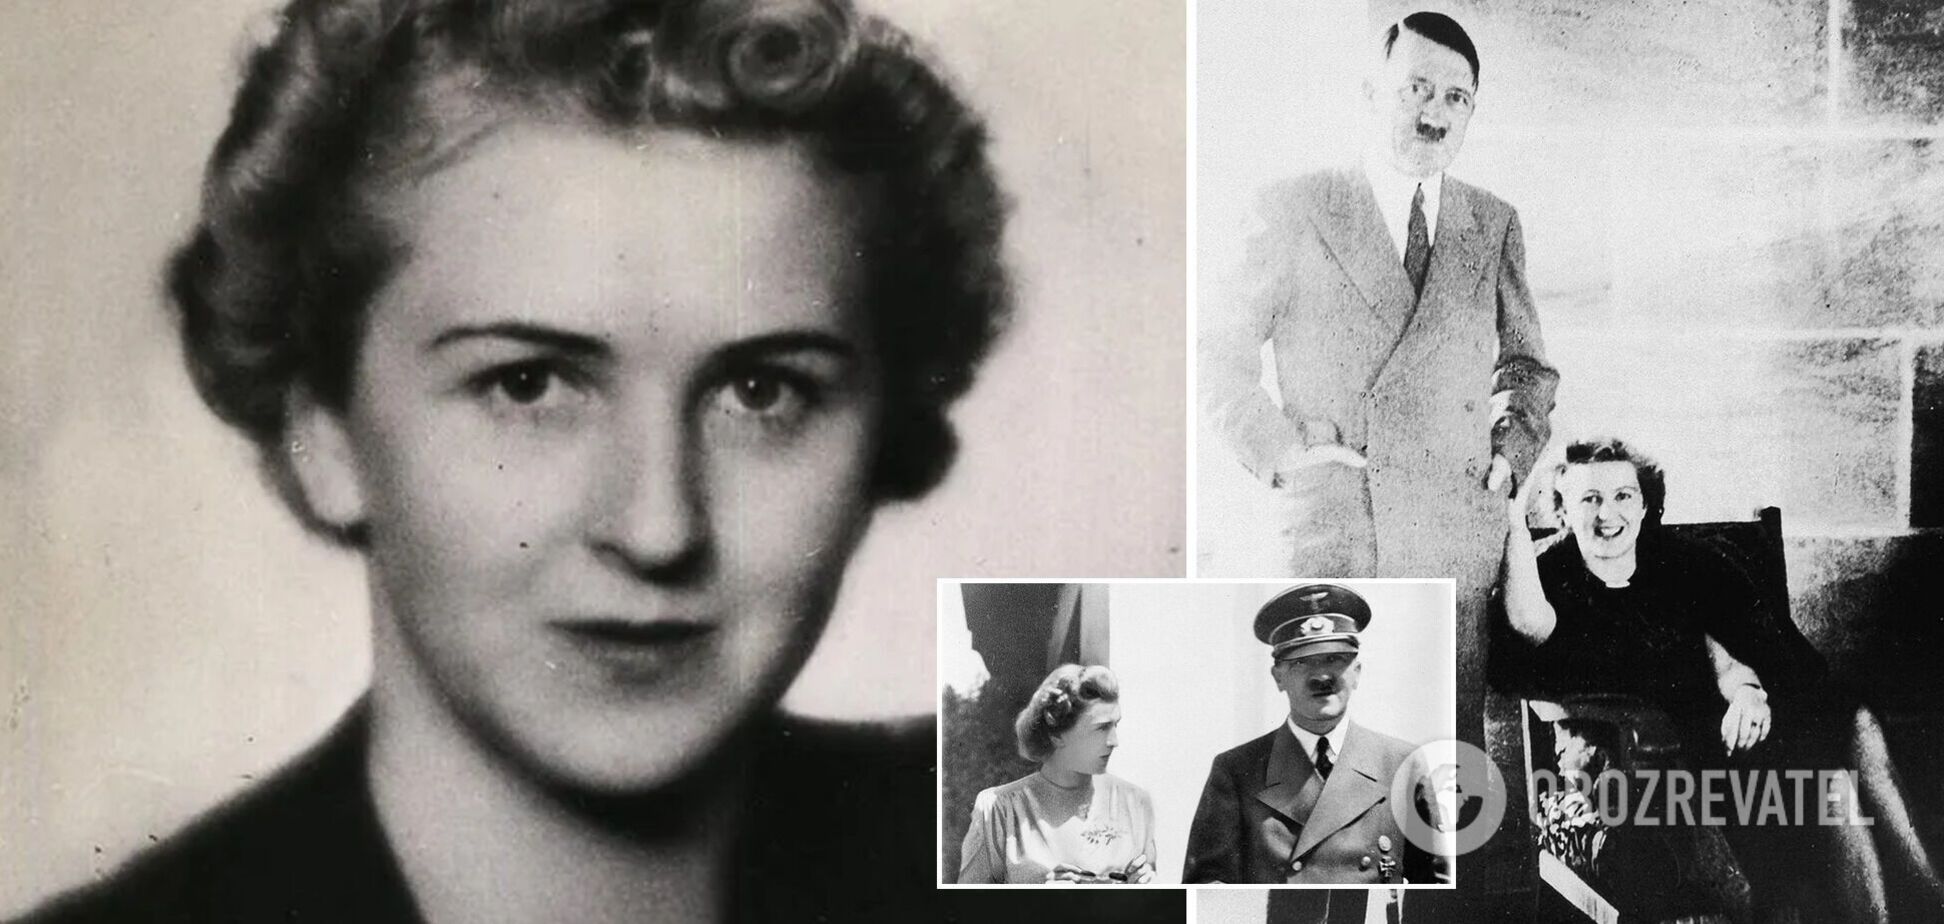 Кохання до Гітлера для Єви Браун була болісним